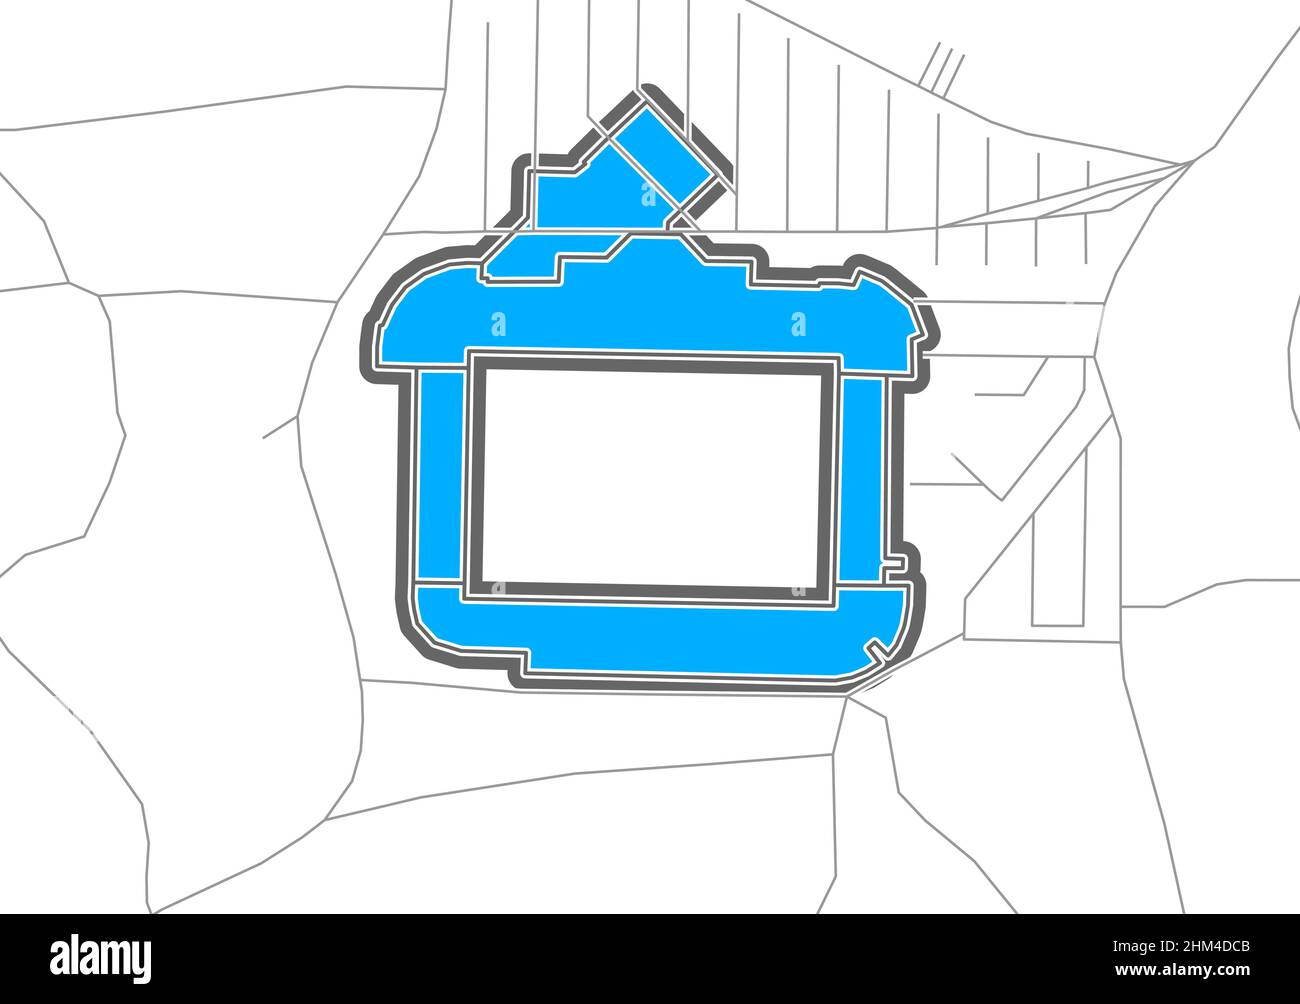 Heidenheim, stade de football, carte vectorielle.La carte bundesliga statium a été tracée avec des zones blanches et des lignes pour les routes principales, les routes latérales. Illustration de Vecteur